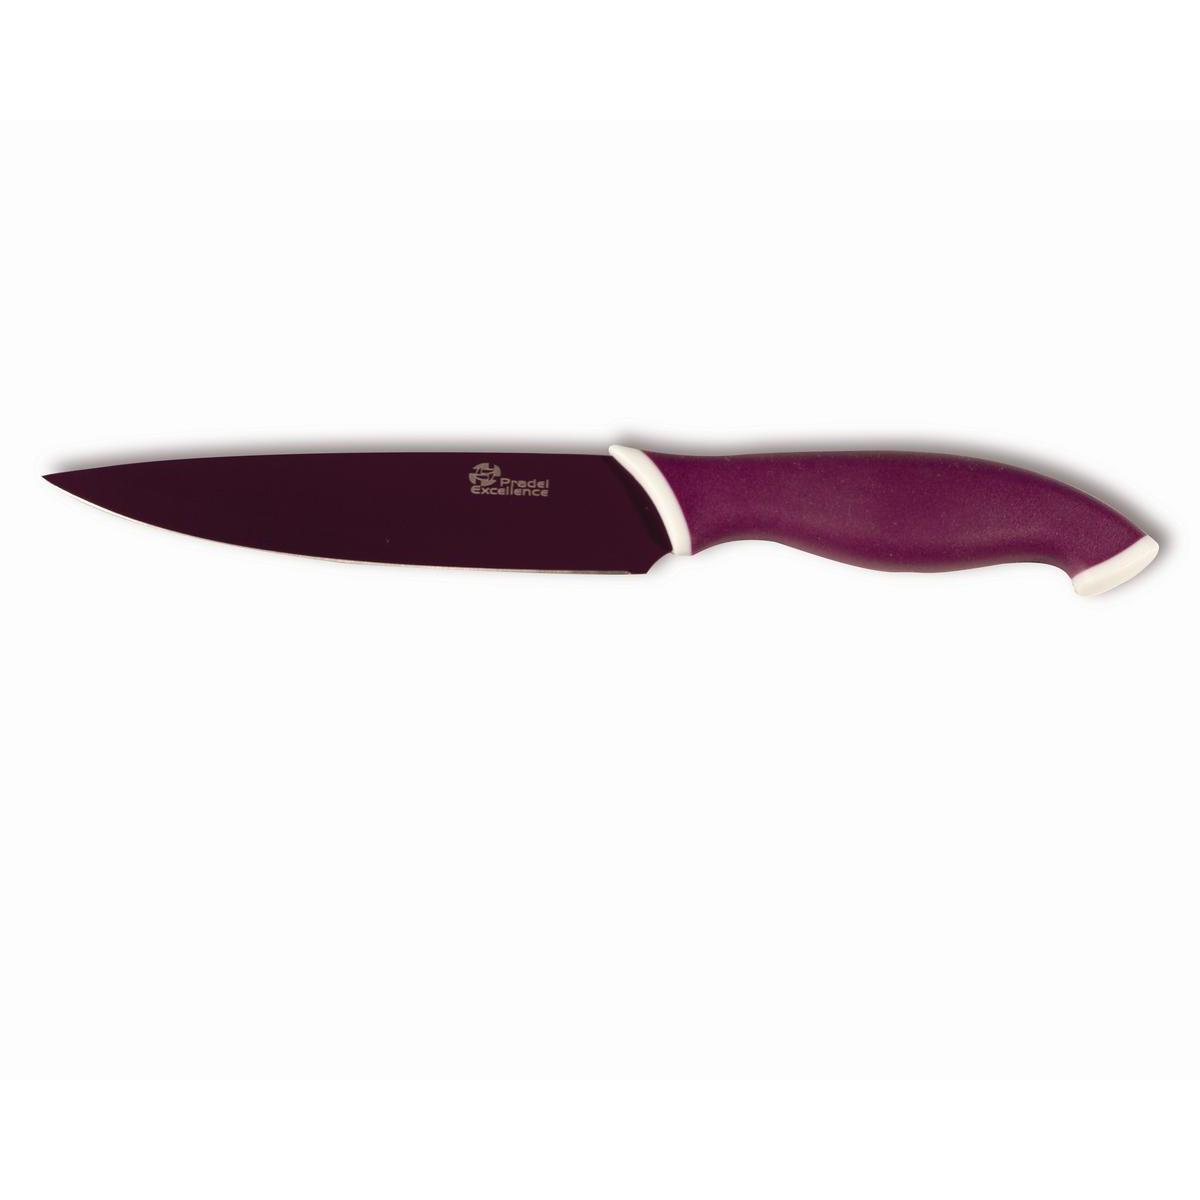 Couteau cuisine lame - Acier inoxydable - Manche abs - 12,5 cm - Violet